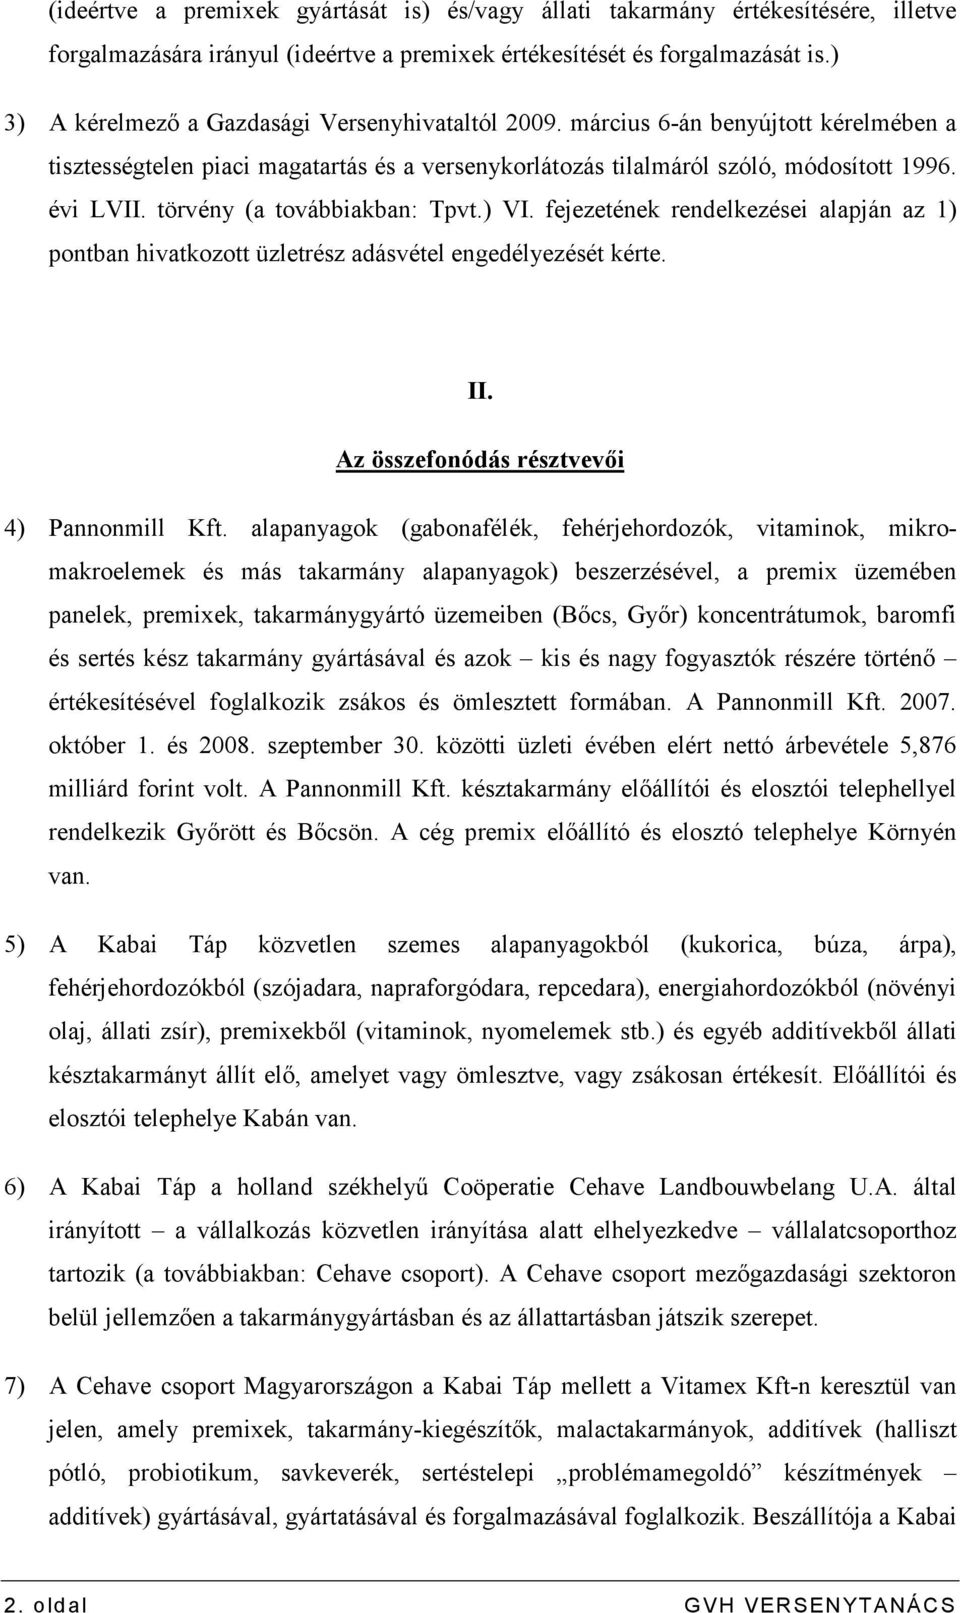 törvény (a továbbiakban: Tpvt.) VI. fejezetének rendelkezései alapján az 1) pontban hivatkozott üzletrész adásvétel engedélyezését kérte. II. Az összefonódás résztvevıi 4) Pannonmill Kft.